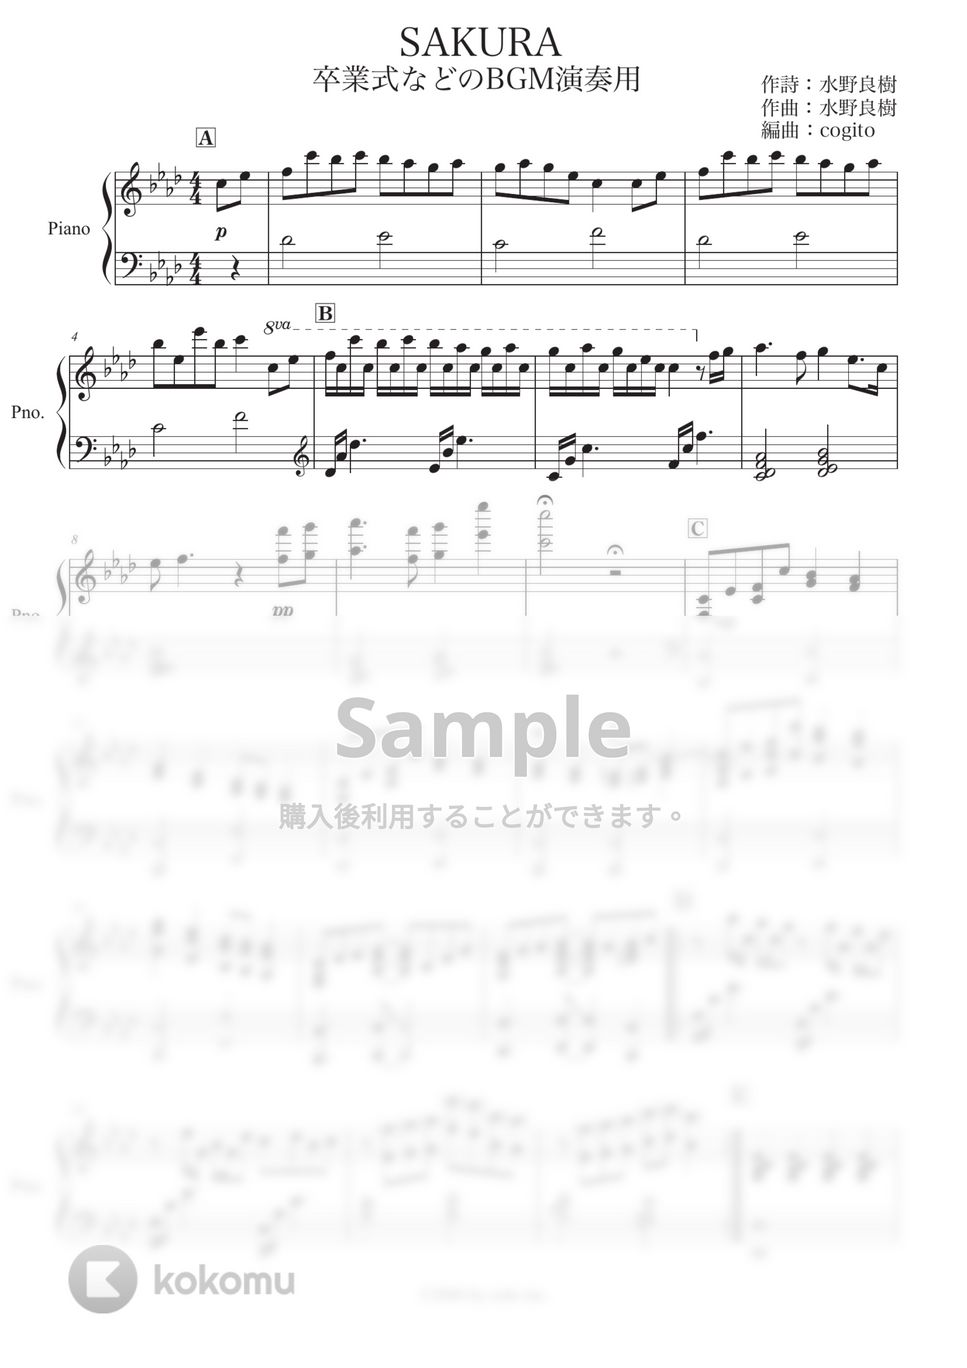 いきものがかり - SAKURA (卒業式 / ピアノ / BGM演奏用) by コギト